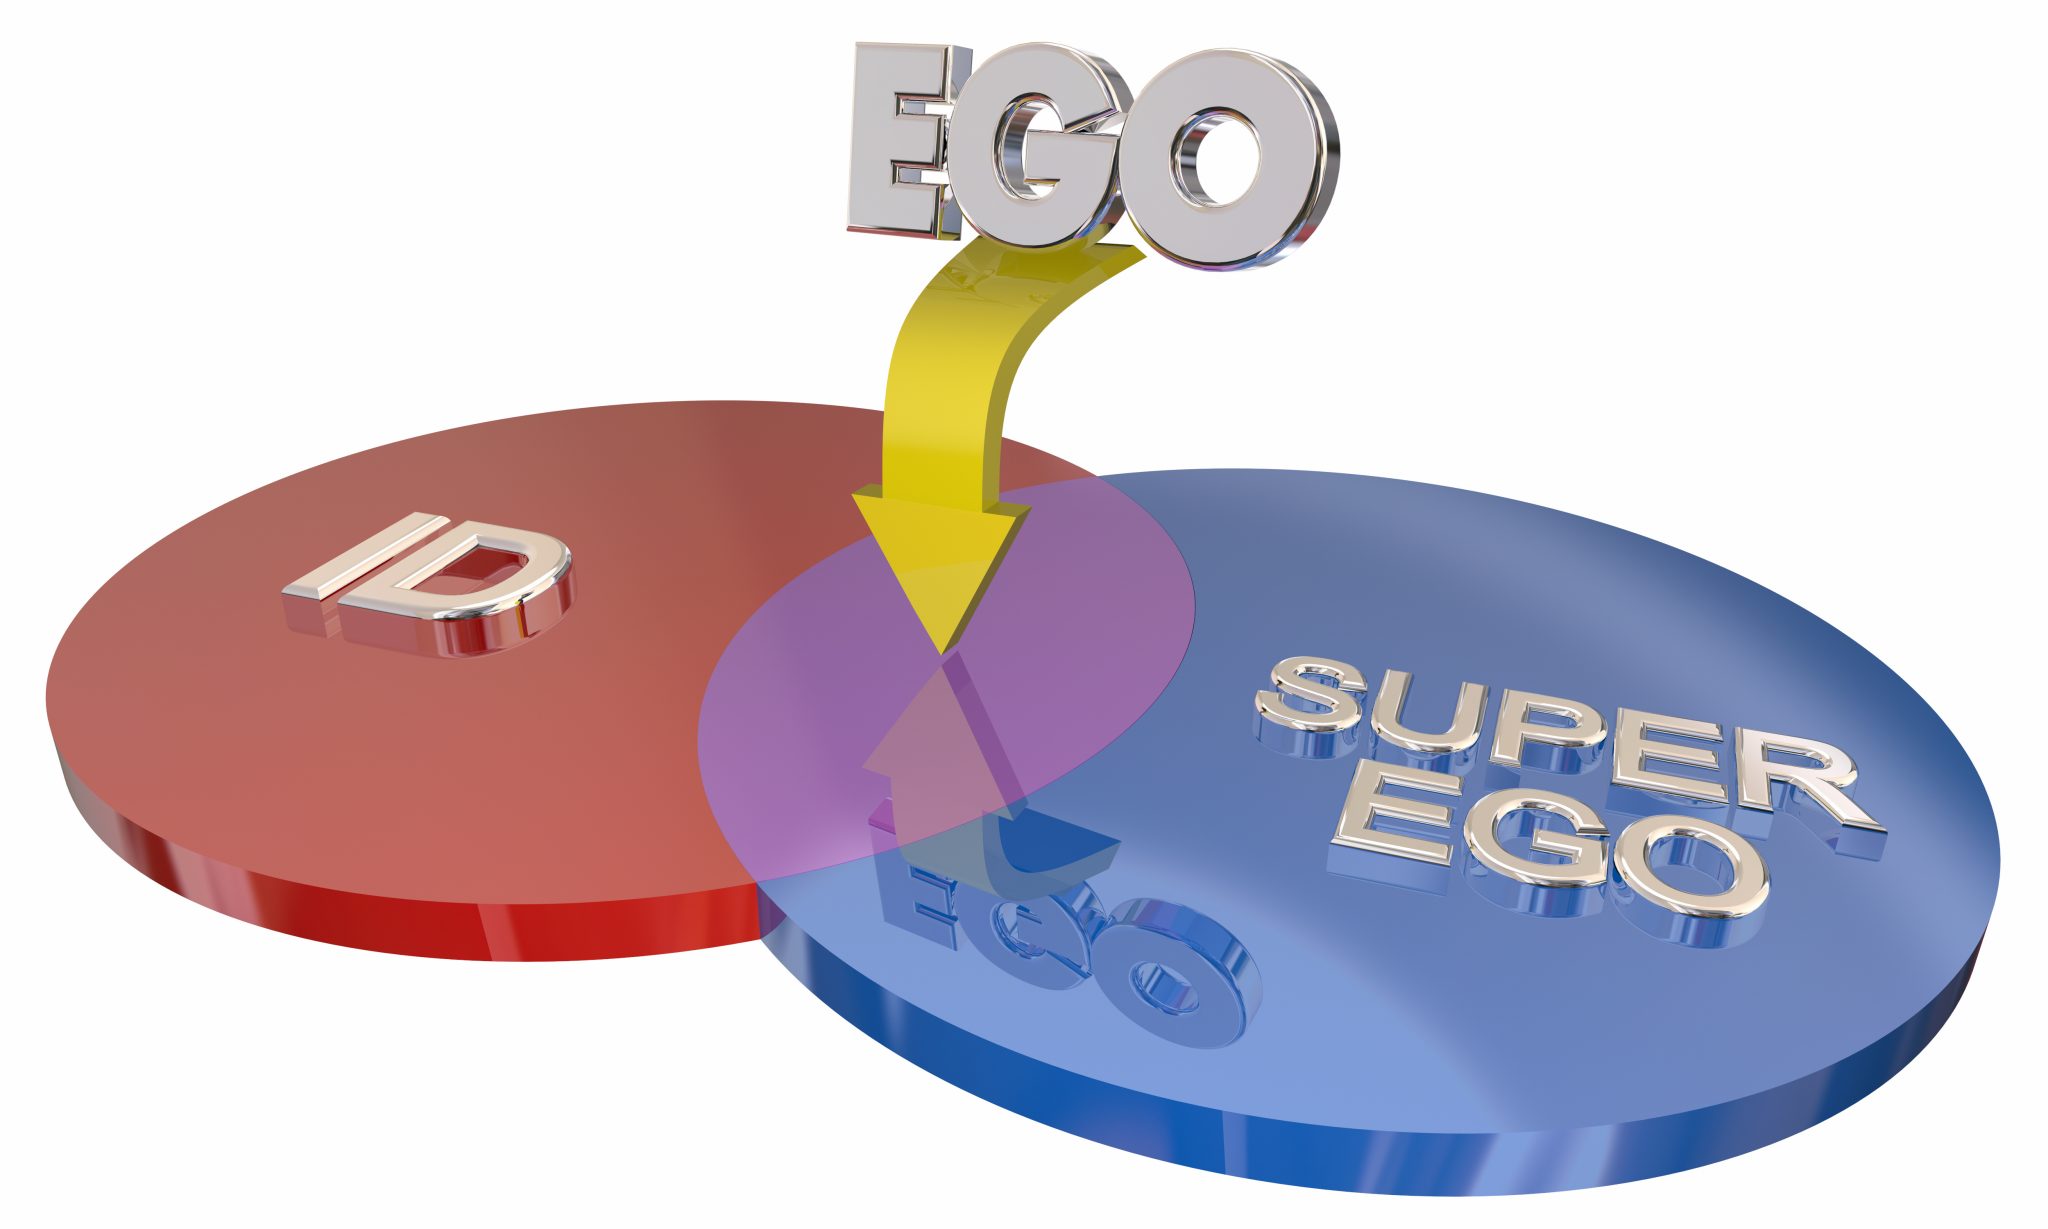 id ego superego meaning